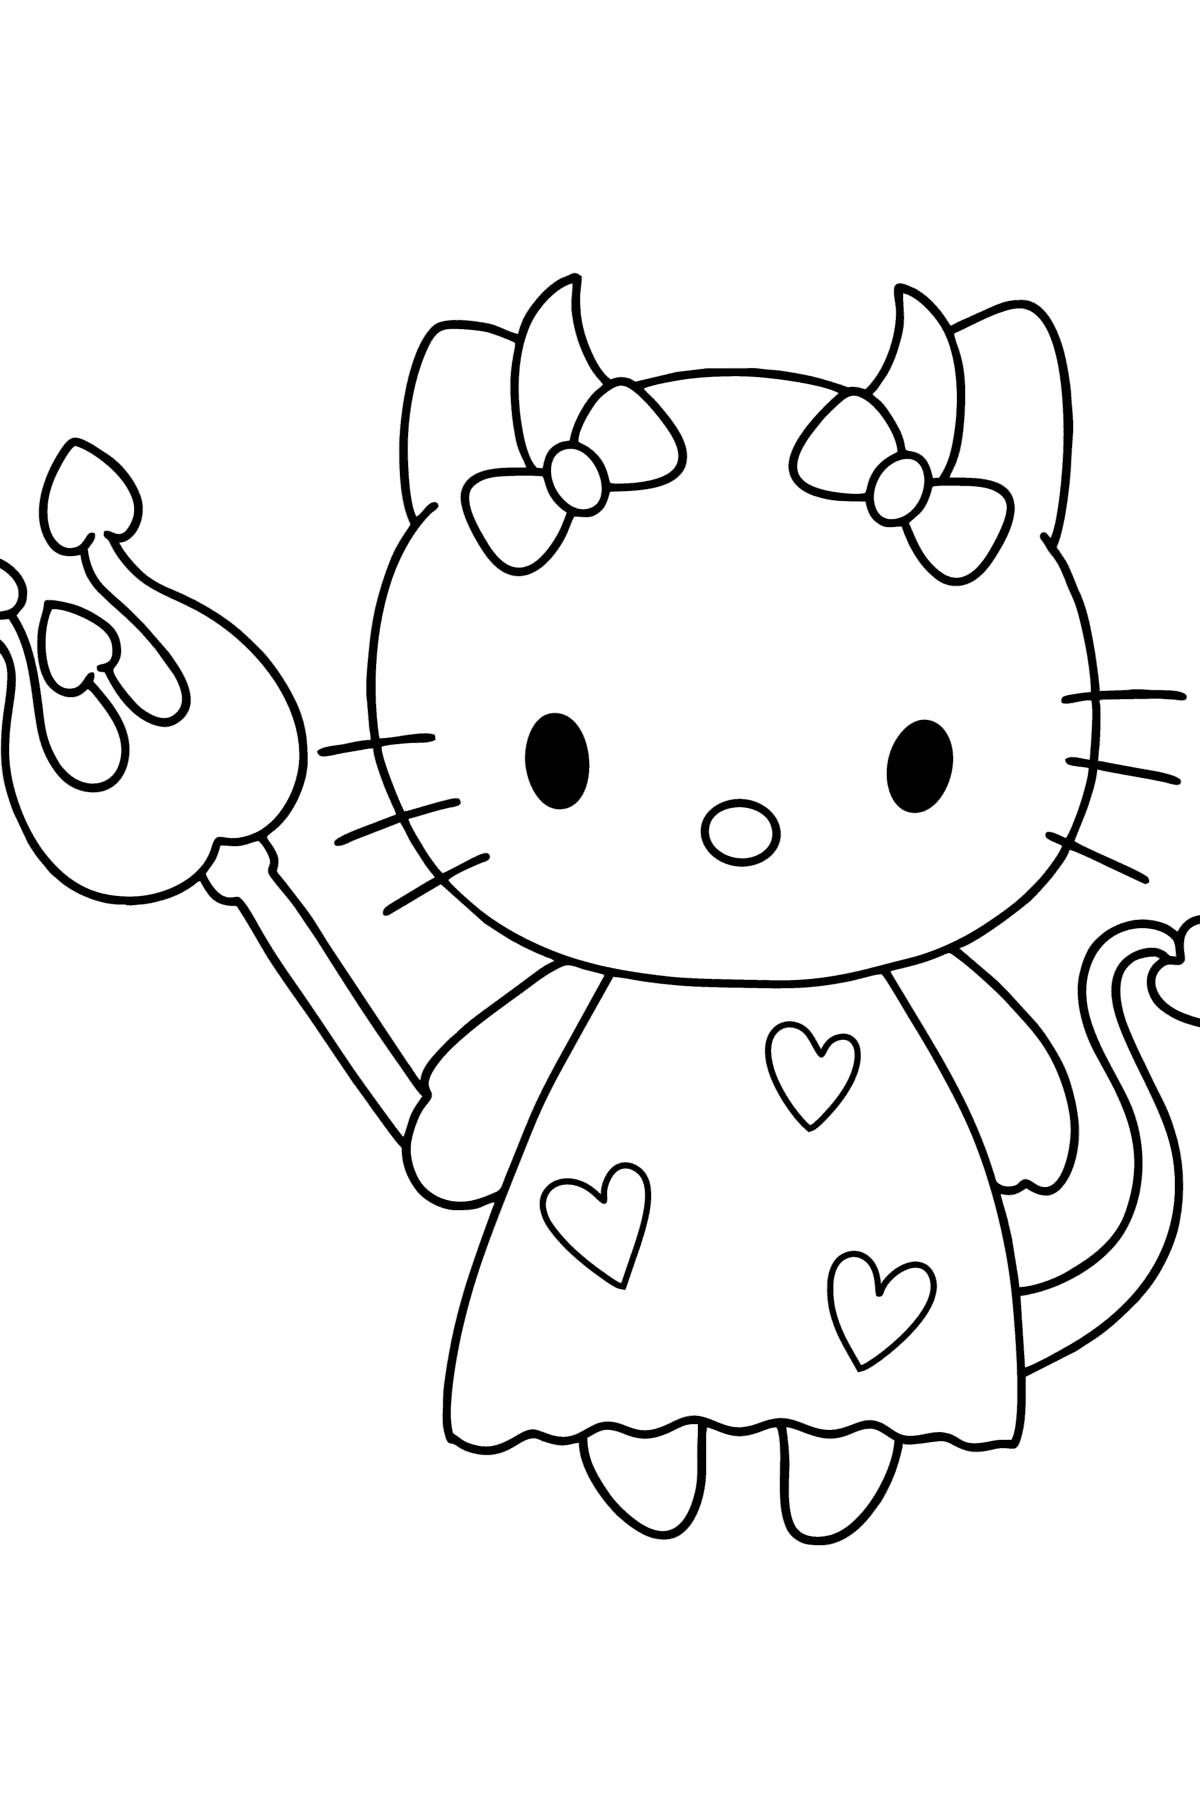 Dibujo de Hello Kitty Devil para colorear - Dibujos para Colorear para Niños